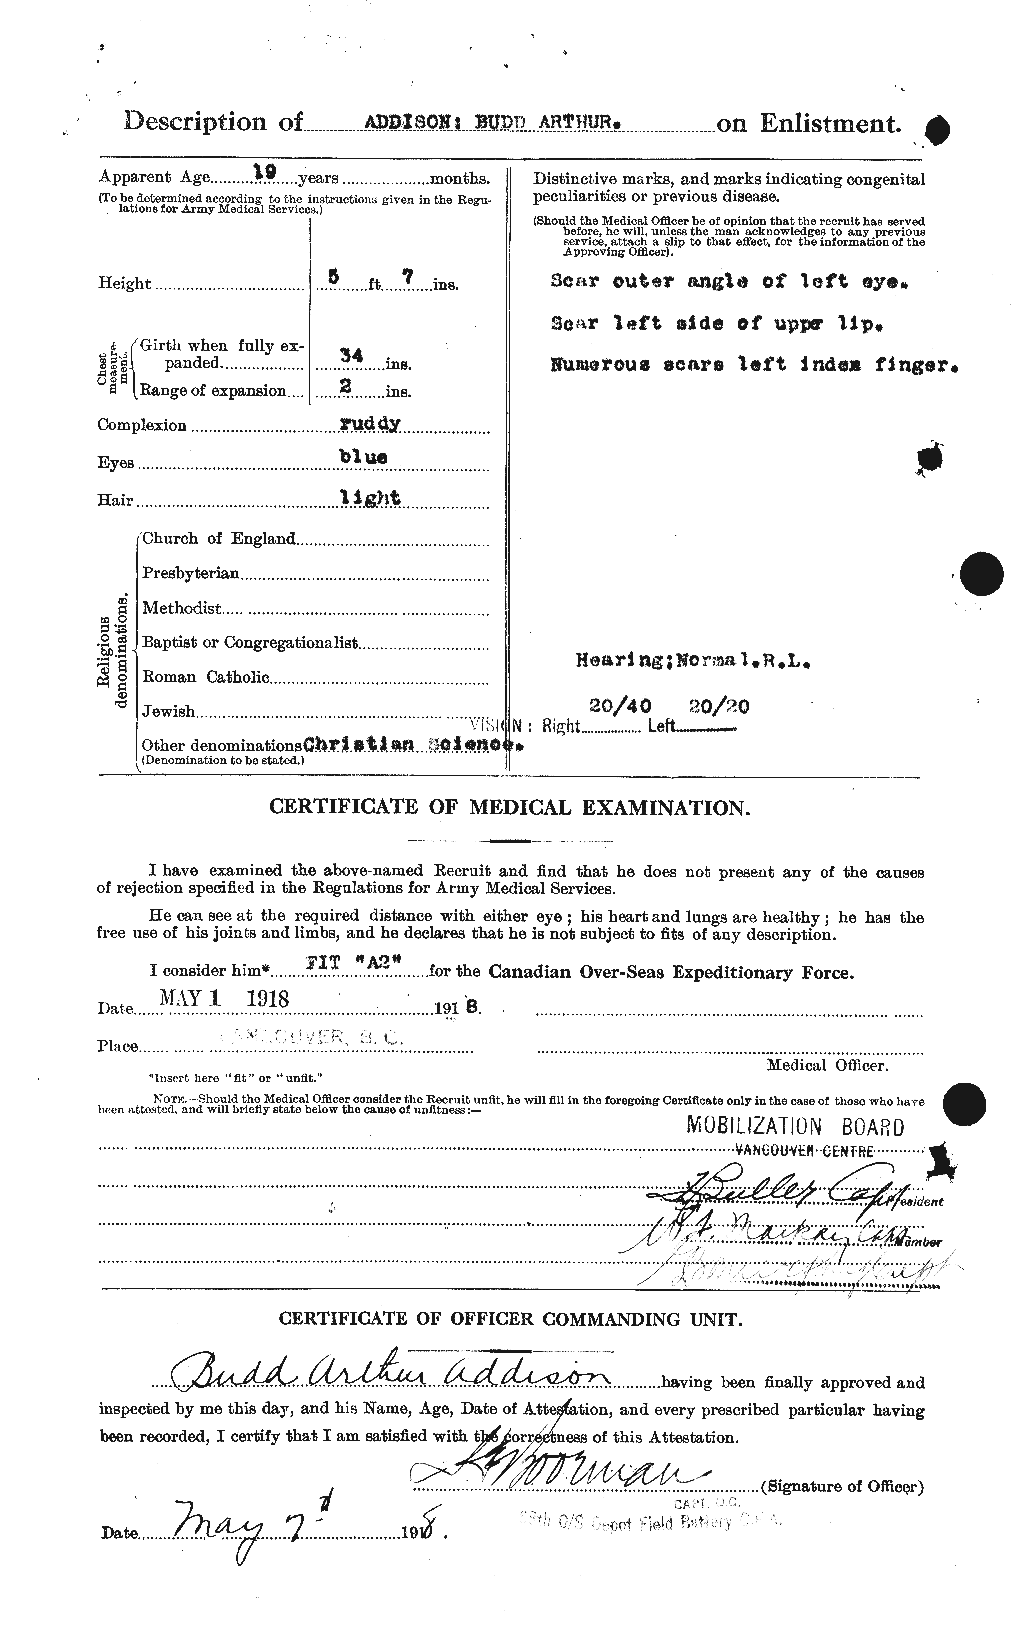 Dossiers du Personnel de la Première Guerre mondiale - CEC 202482b